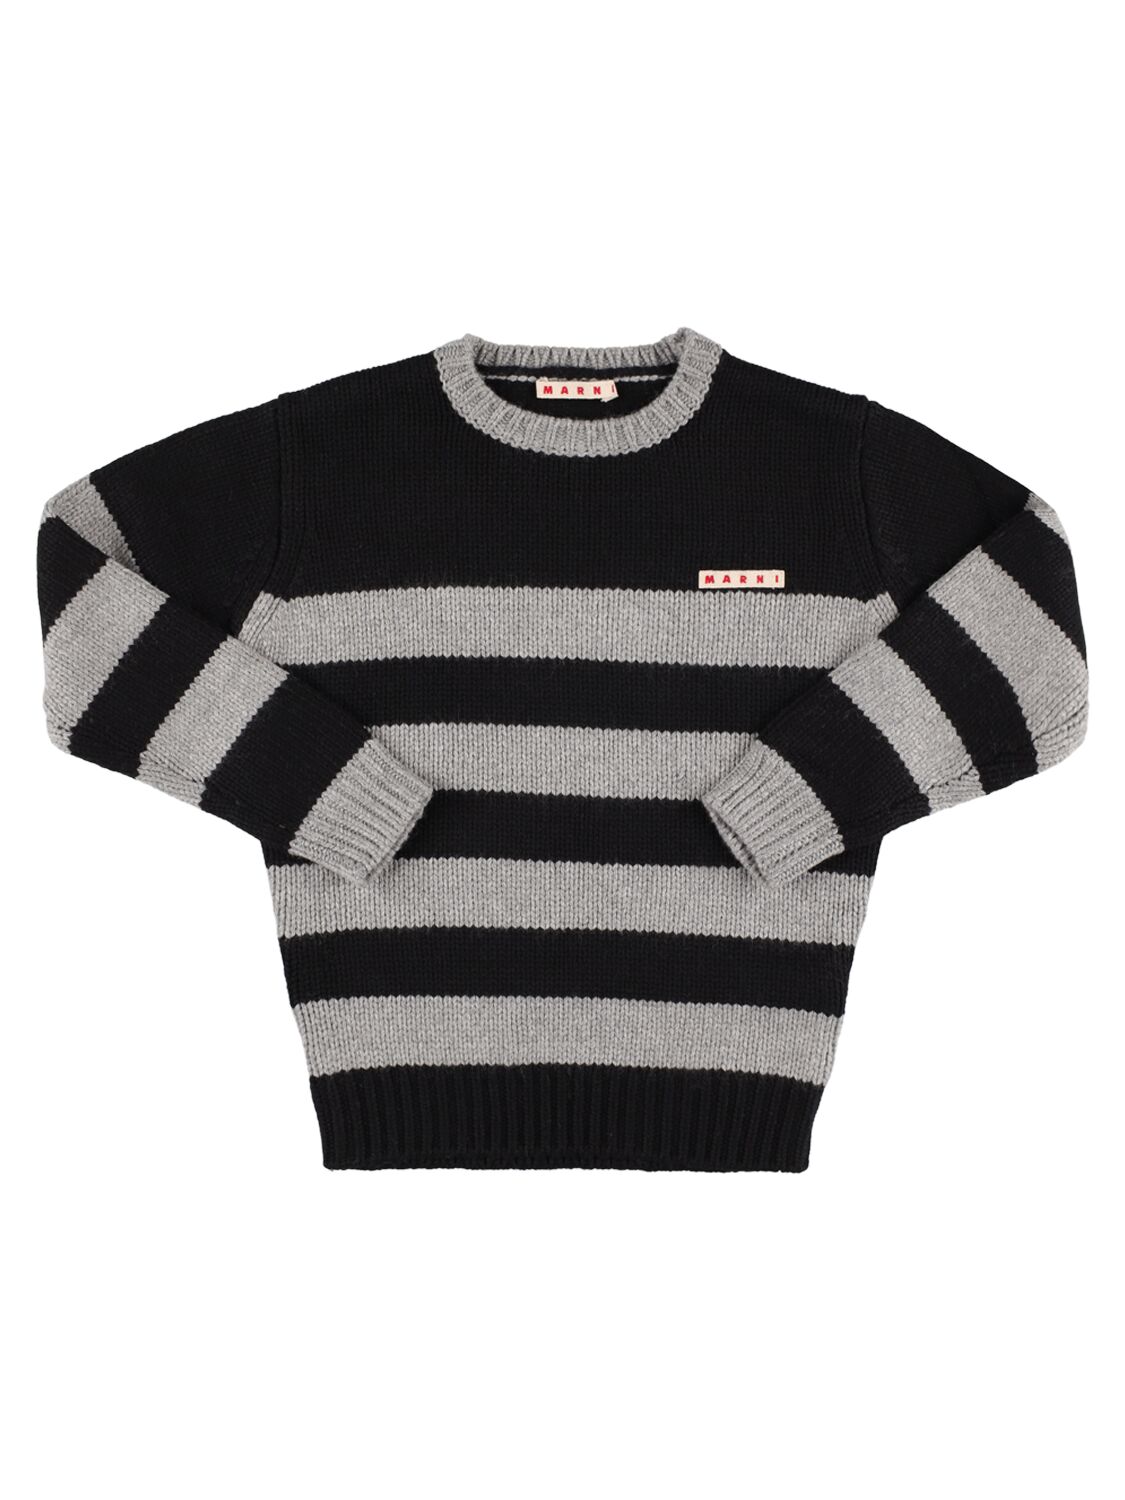 Marni Junior Kids' Striped Viscose Blend Sweater In Black,grey